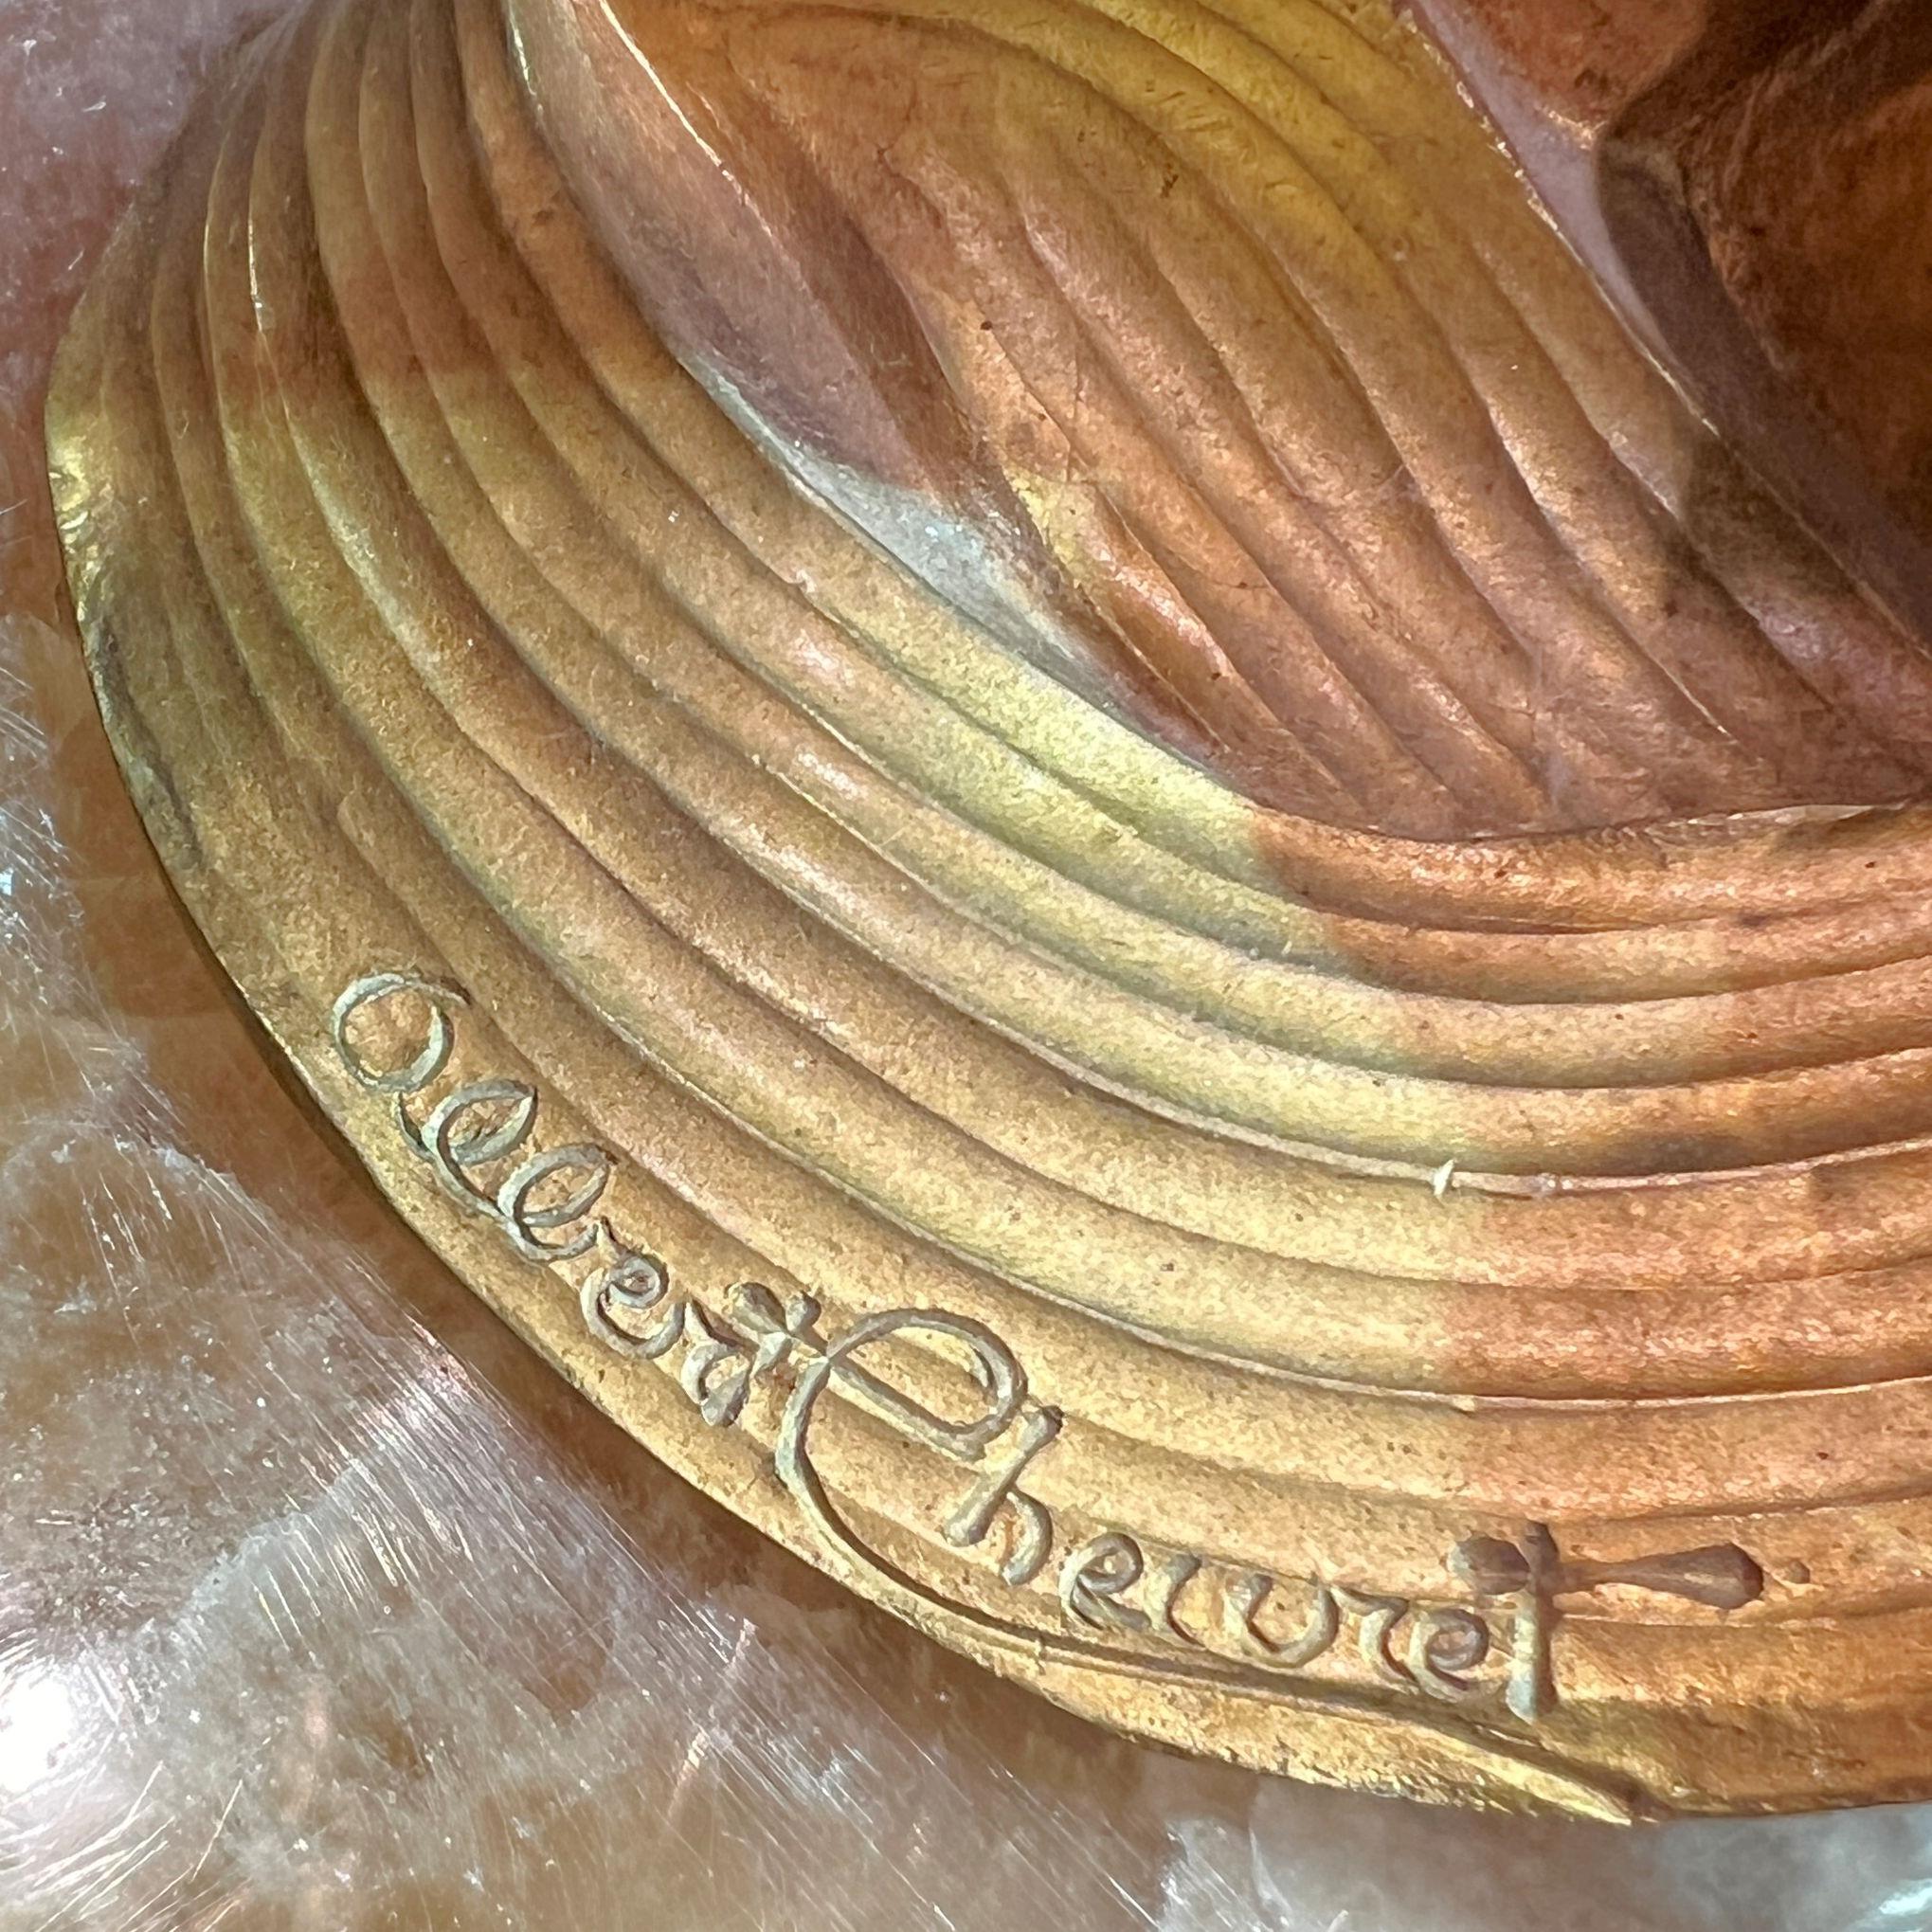 Unsere vergoldeten Tischlampen in Form von Tulpen von Albert Cheuret (1884-1966) aus vergoldeter Bronze mit geschnitzten Blütenblättern aus Alabaster.  14 3/4 Zoll groß und jeweils in sehr gutem Zustand.  Mit modernen Steckdosen und Kabeln, sofort